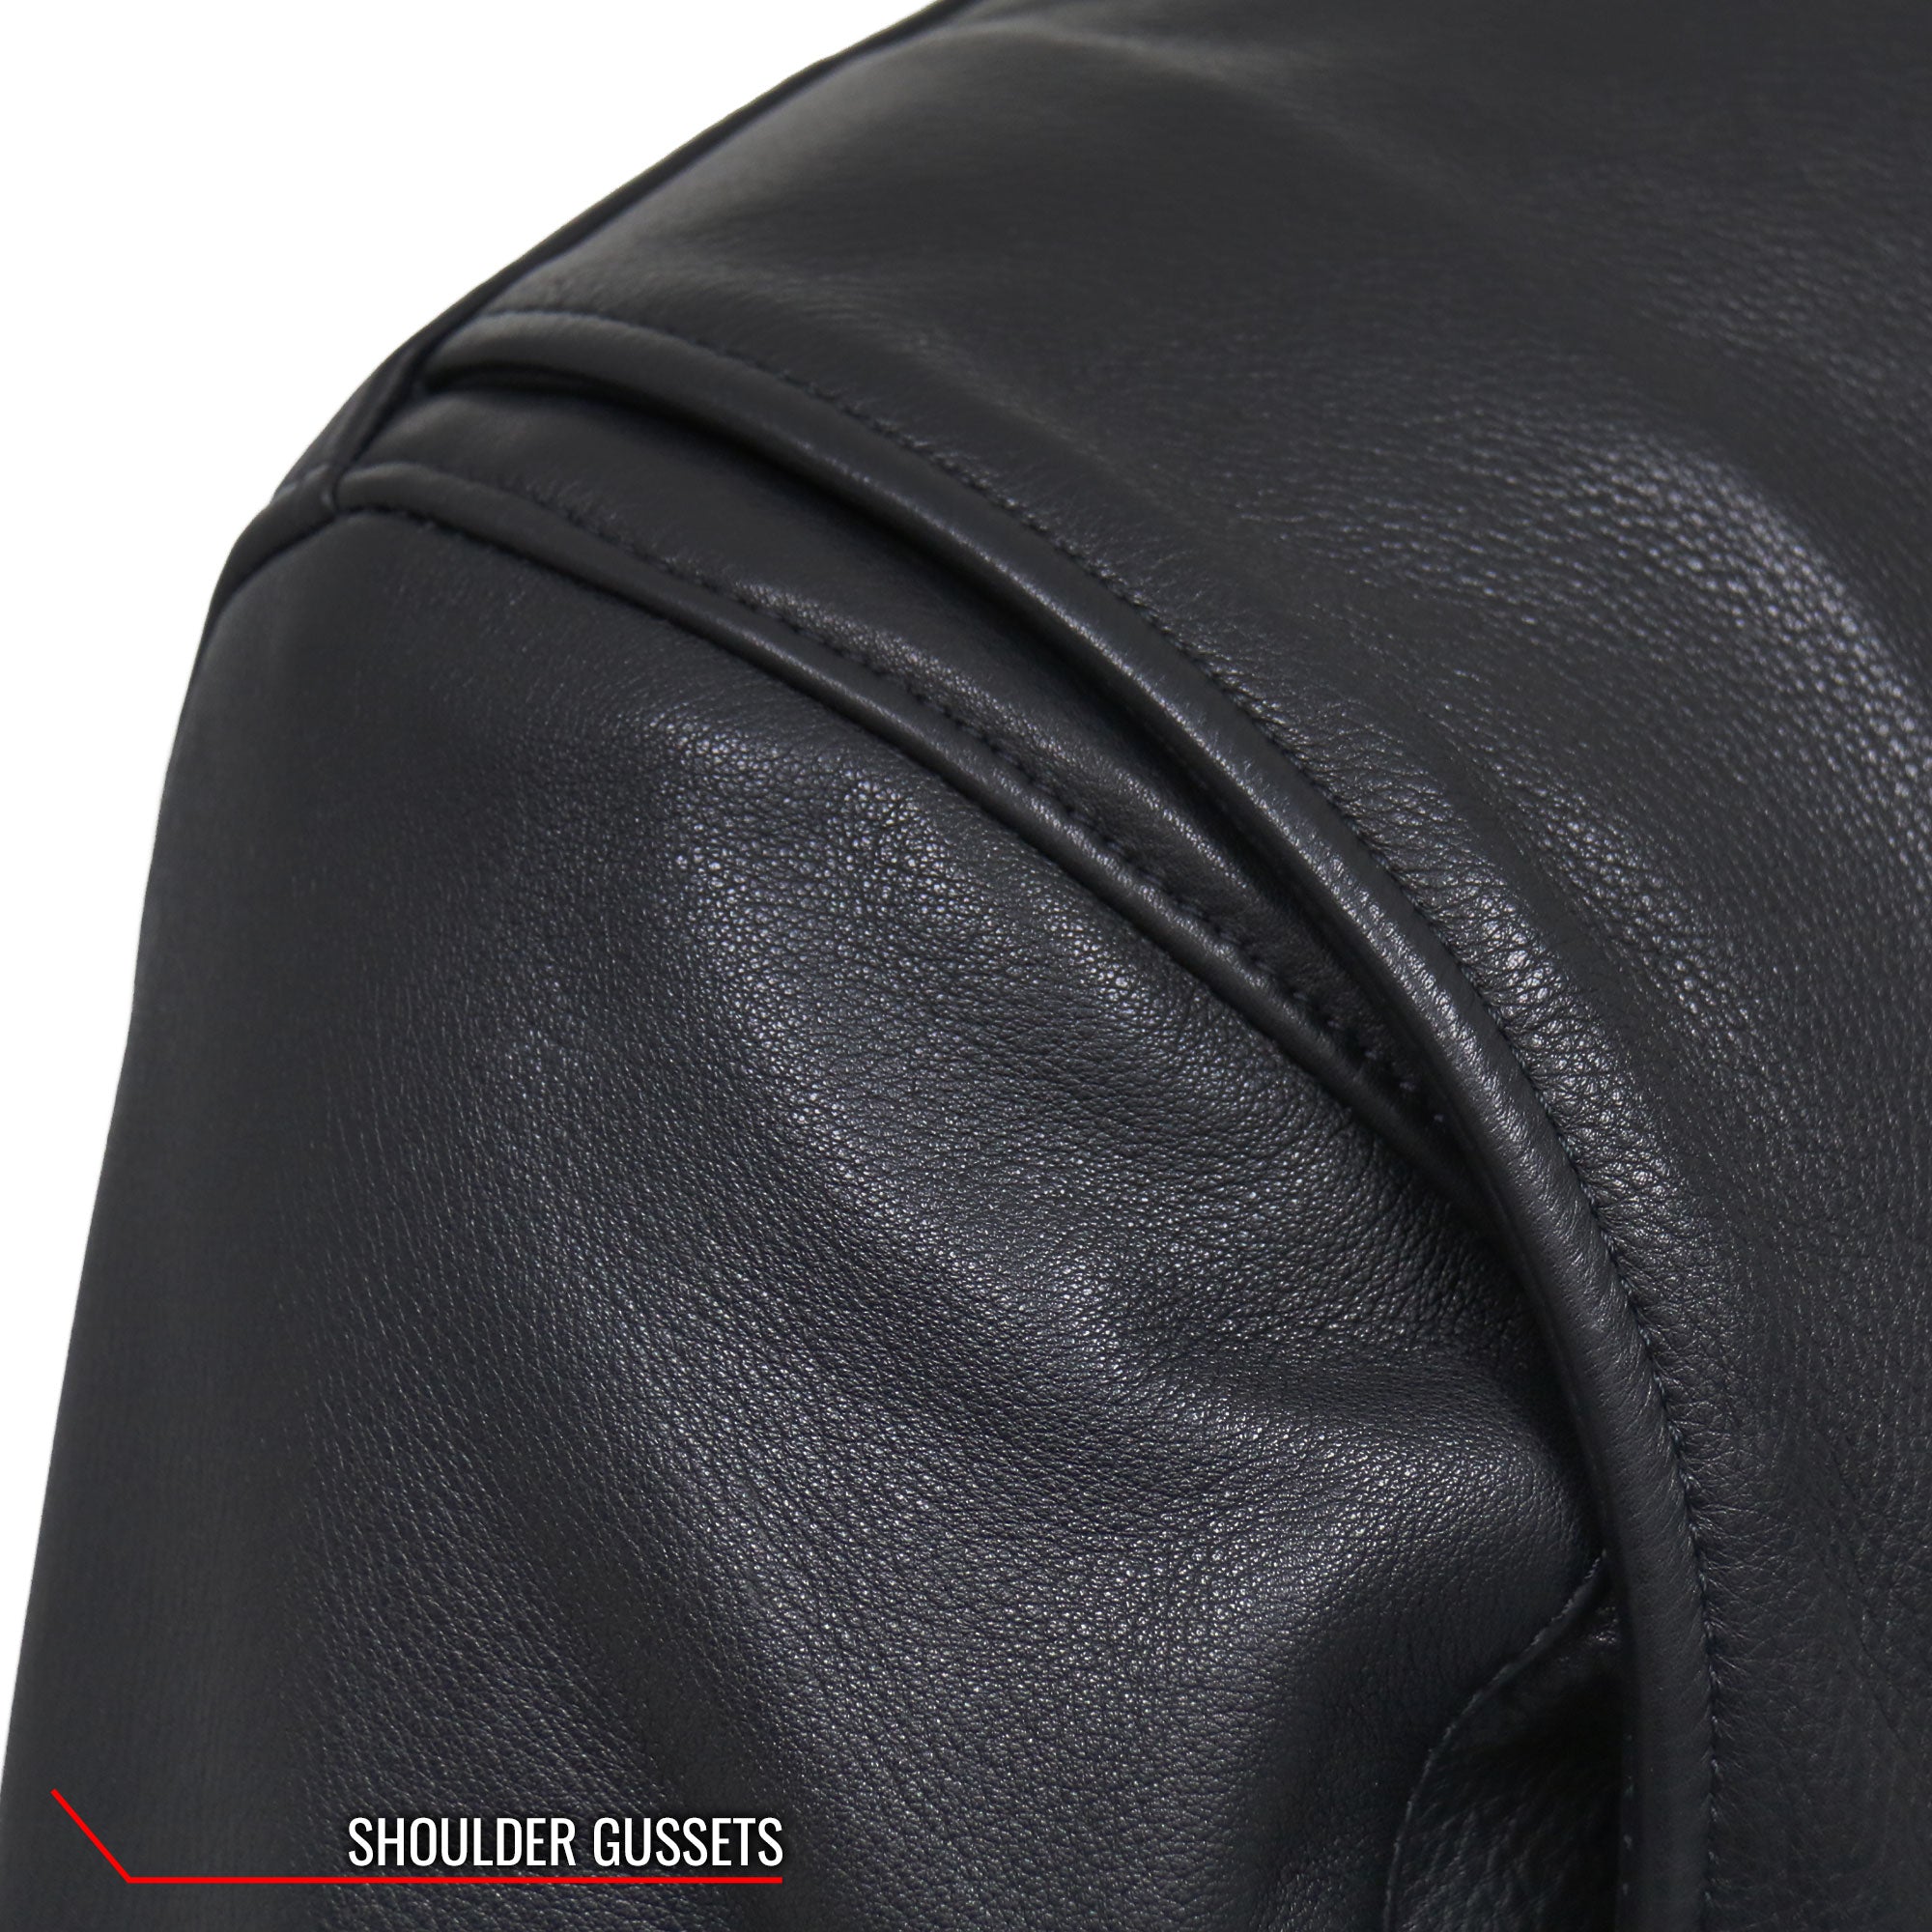 Emg7205 Waterproof Oversized Designer Luxury Large Leather The